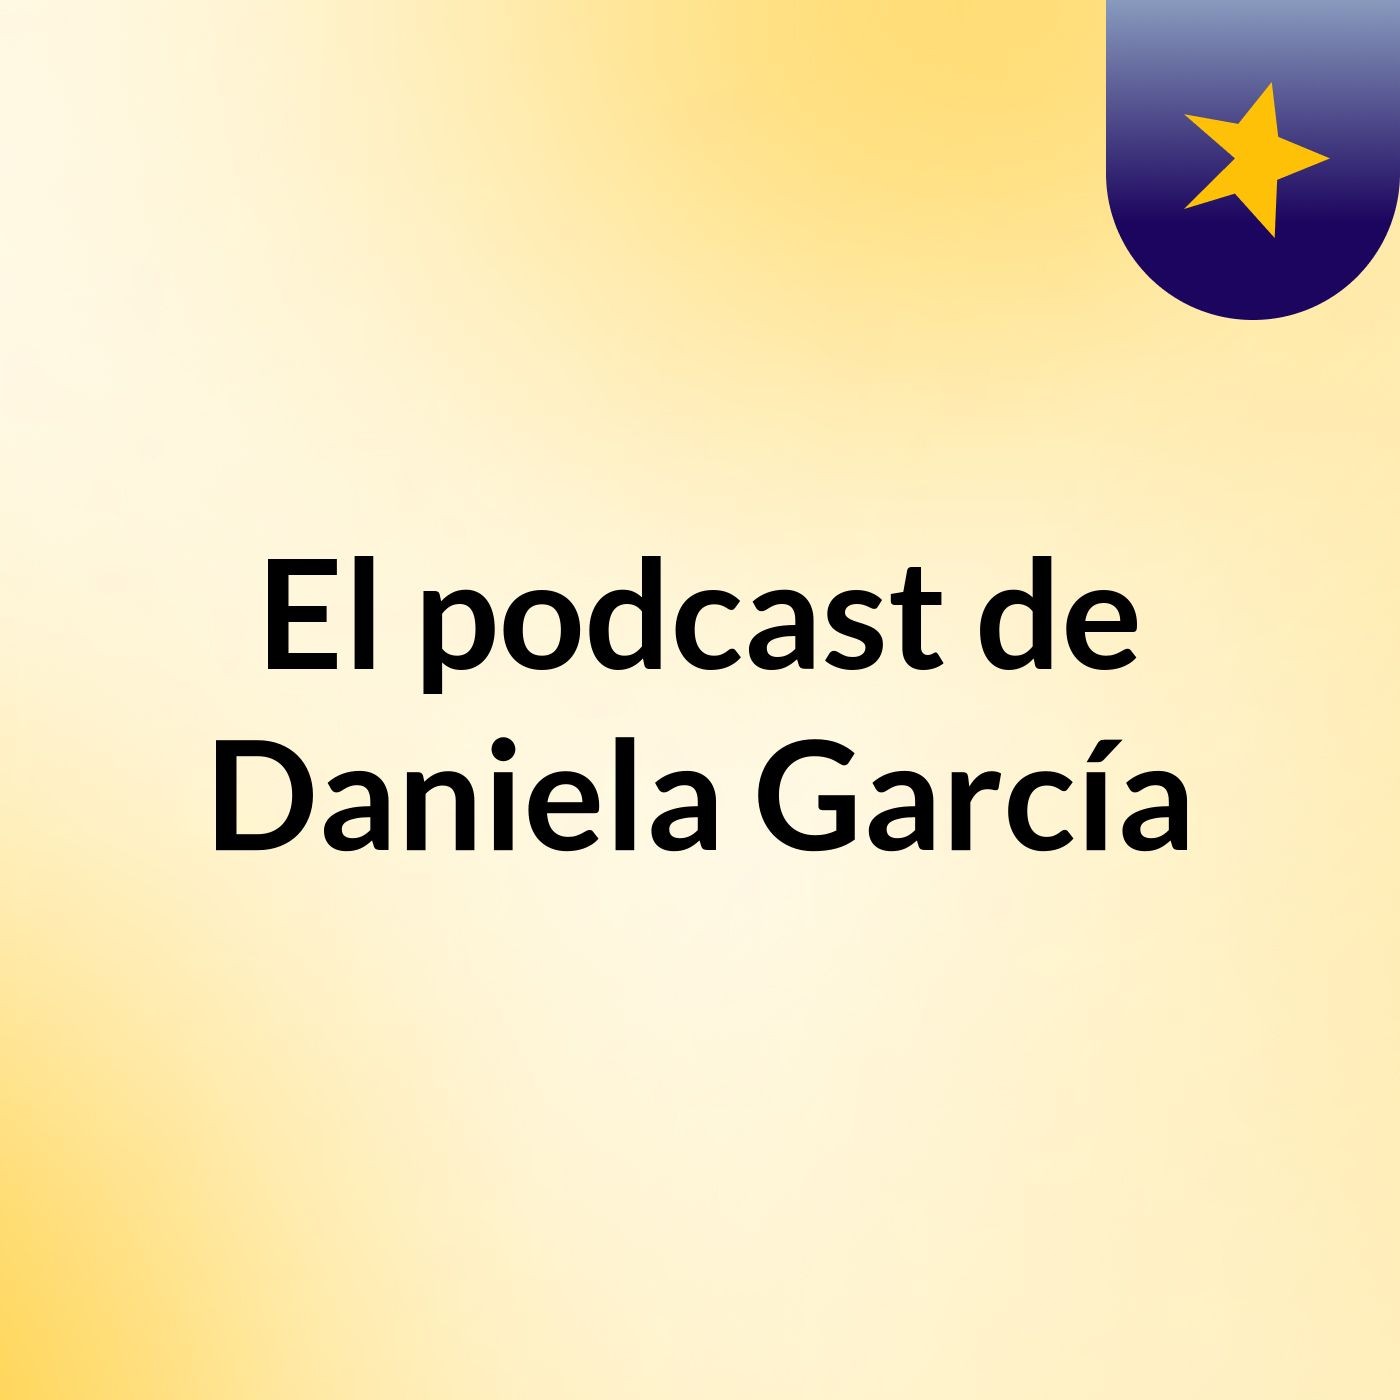 El podcast de Daniela García